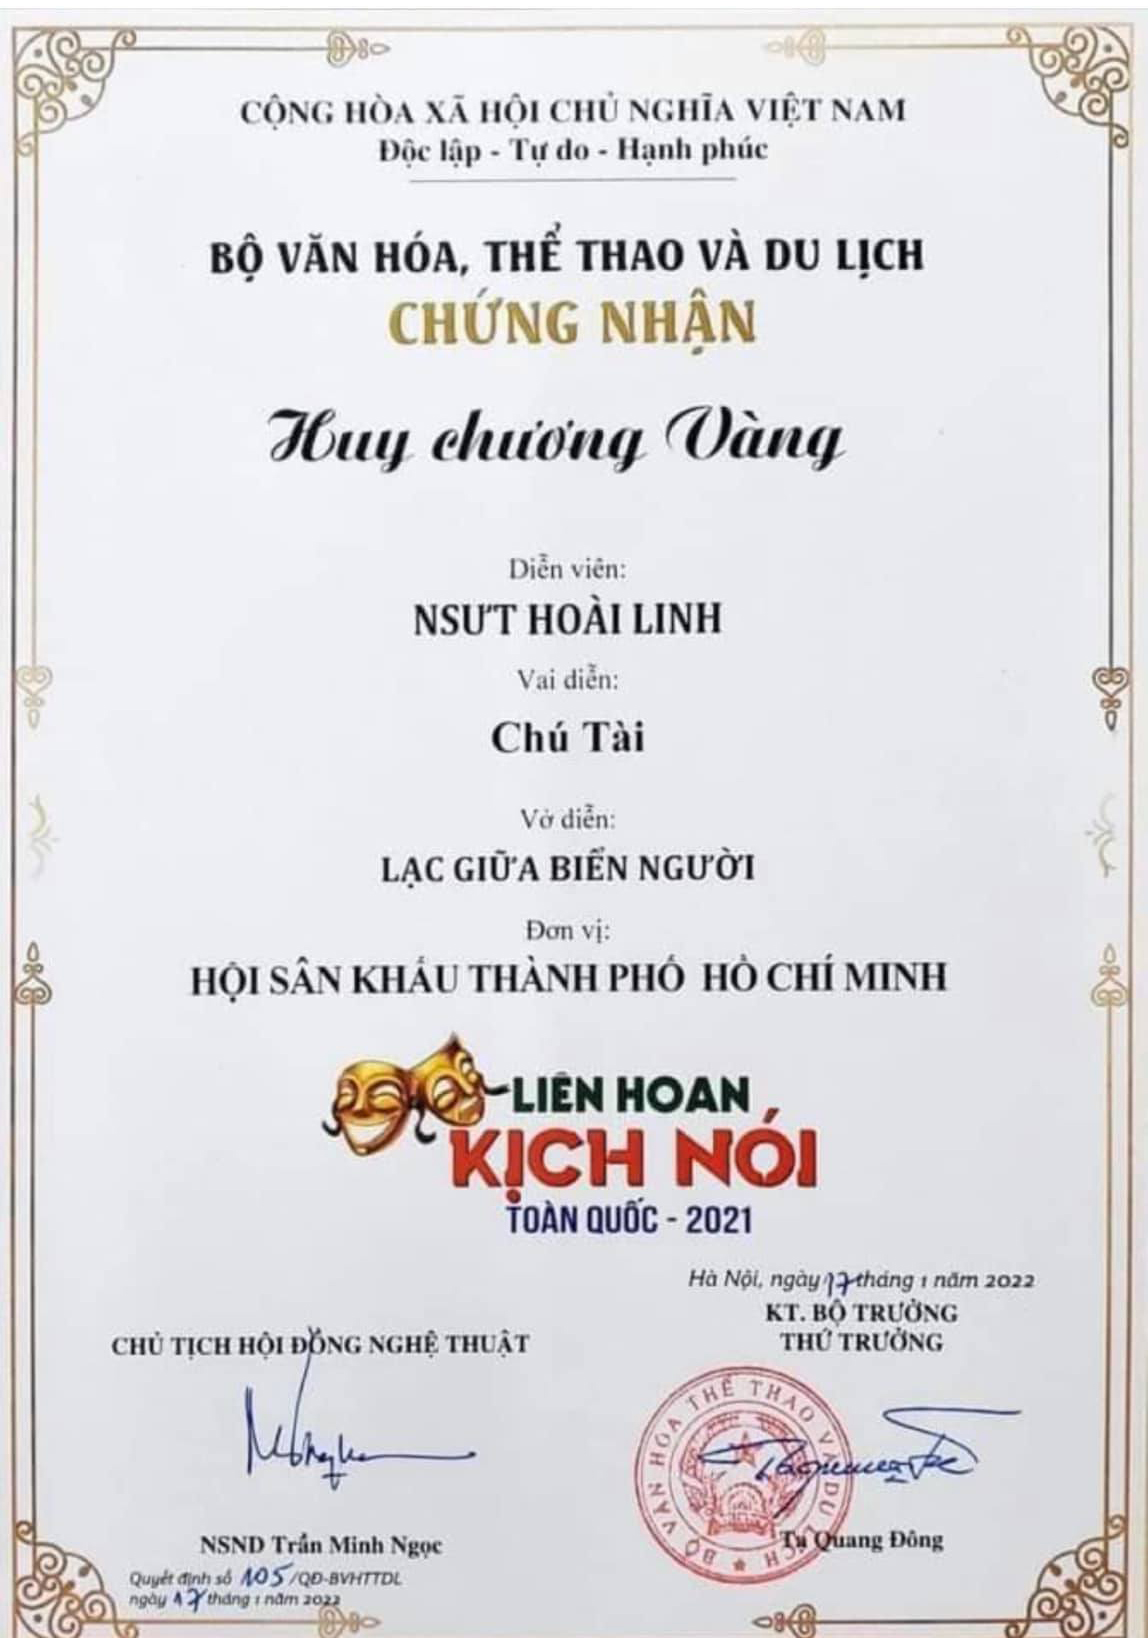 NSUT Hoài Linh nhận Huy chương vàng cho vai diễn trong vở 'Lạc giữa biển người'